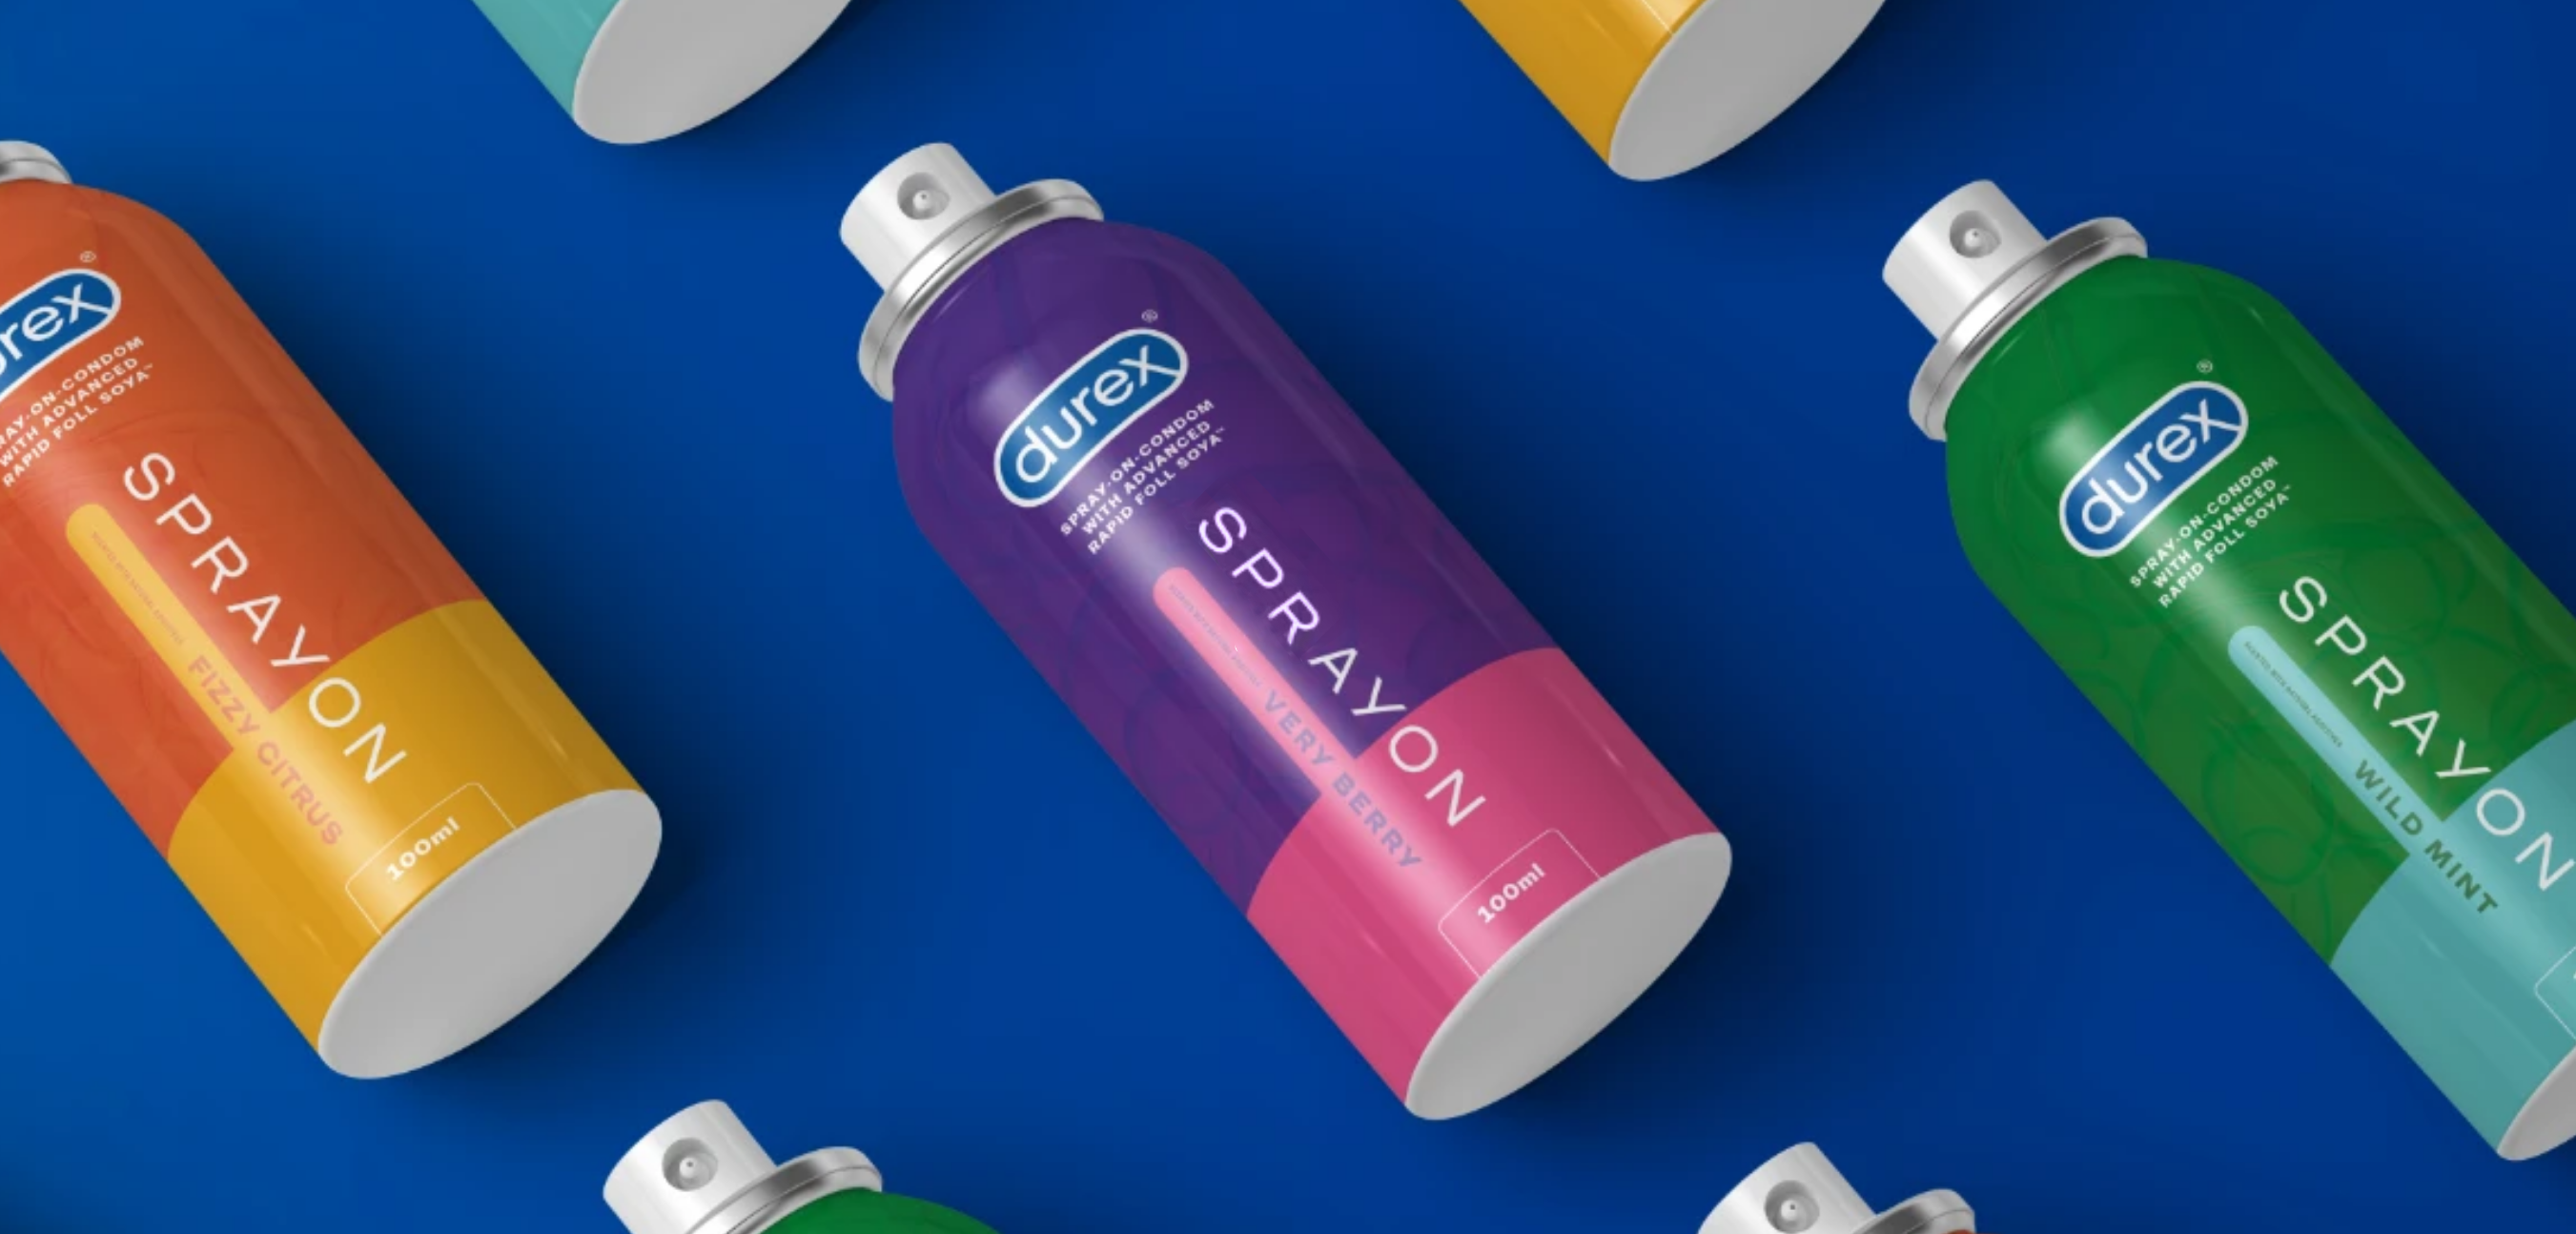 Durex launch the world's first spray-on-condom - Advertising Health